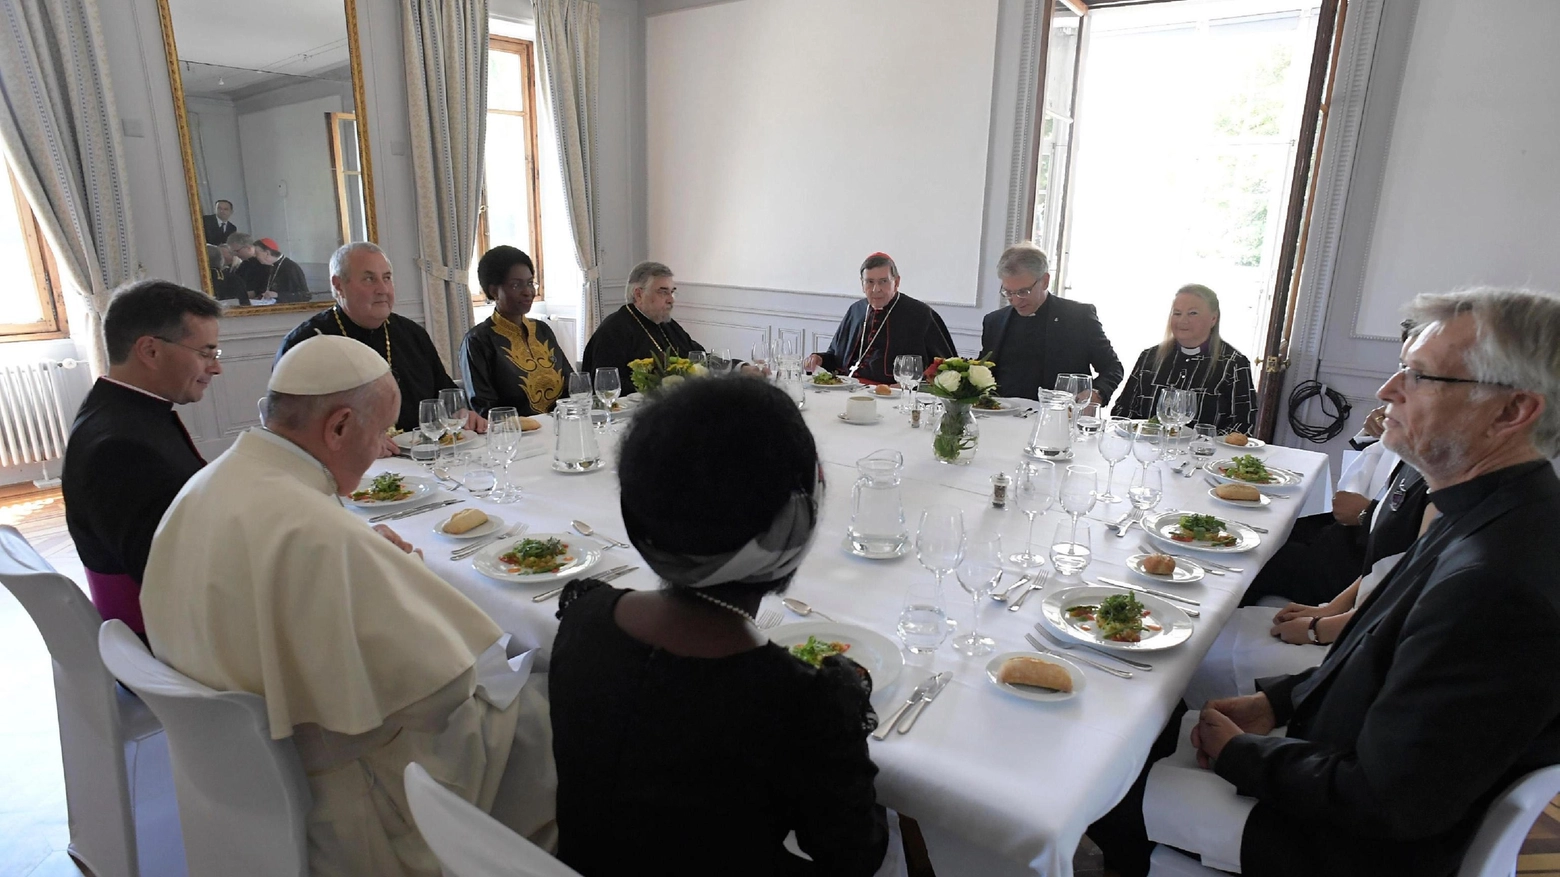 Il Papa a pranzo con i leader cristiani, anche donne (Ansa)